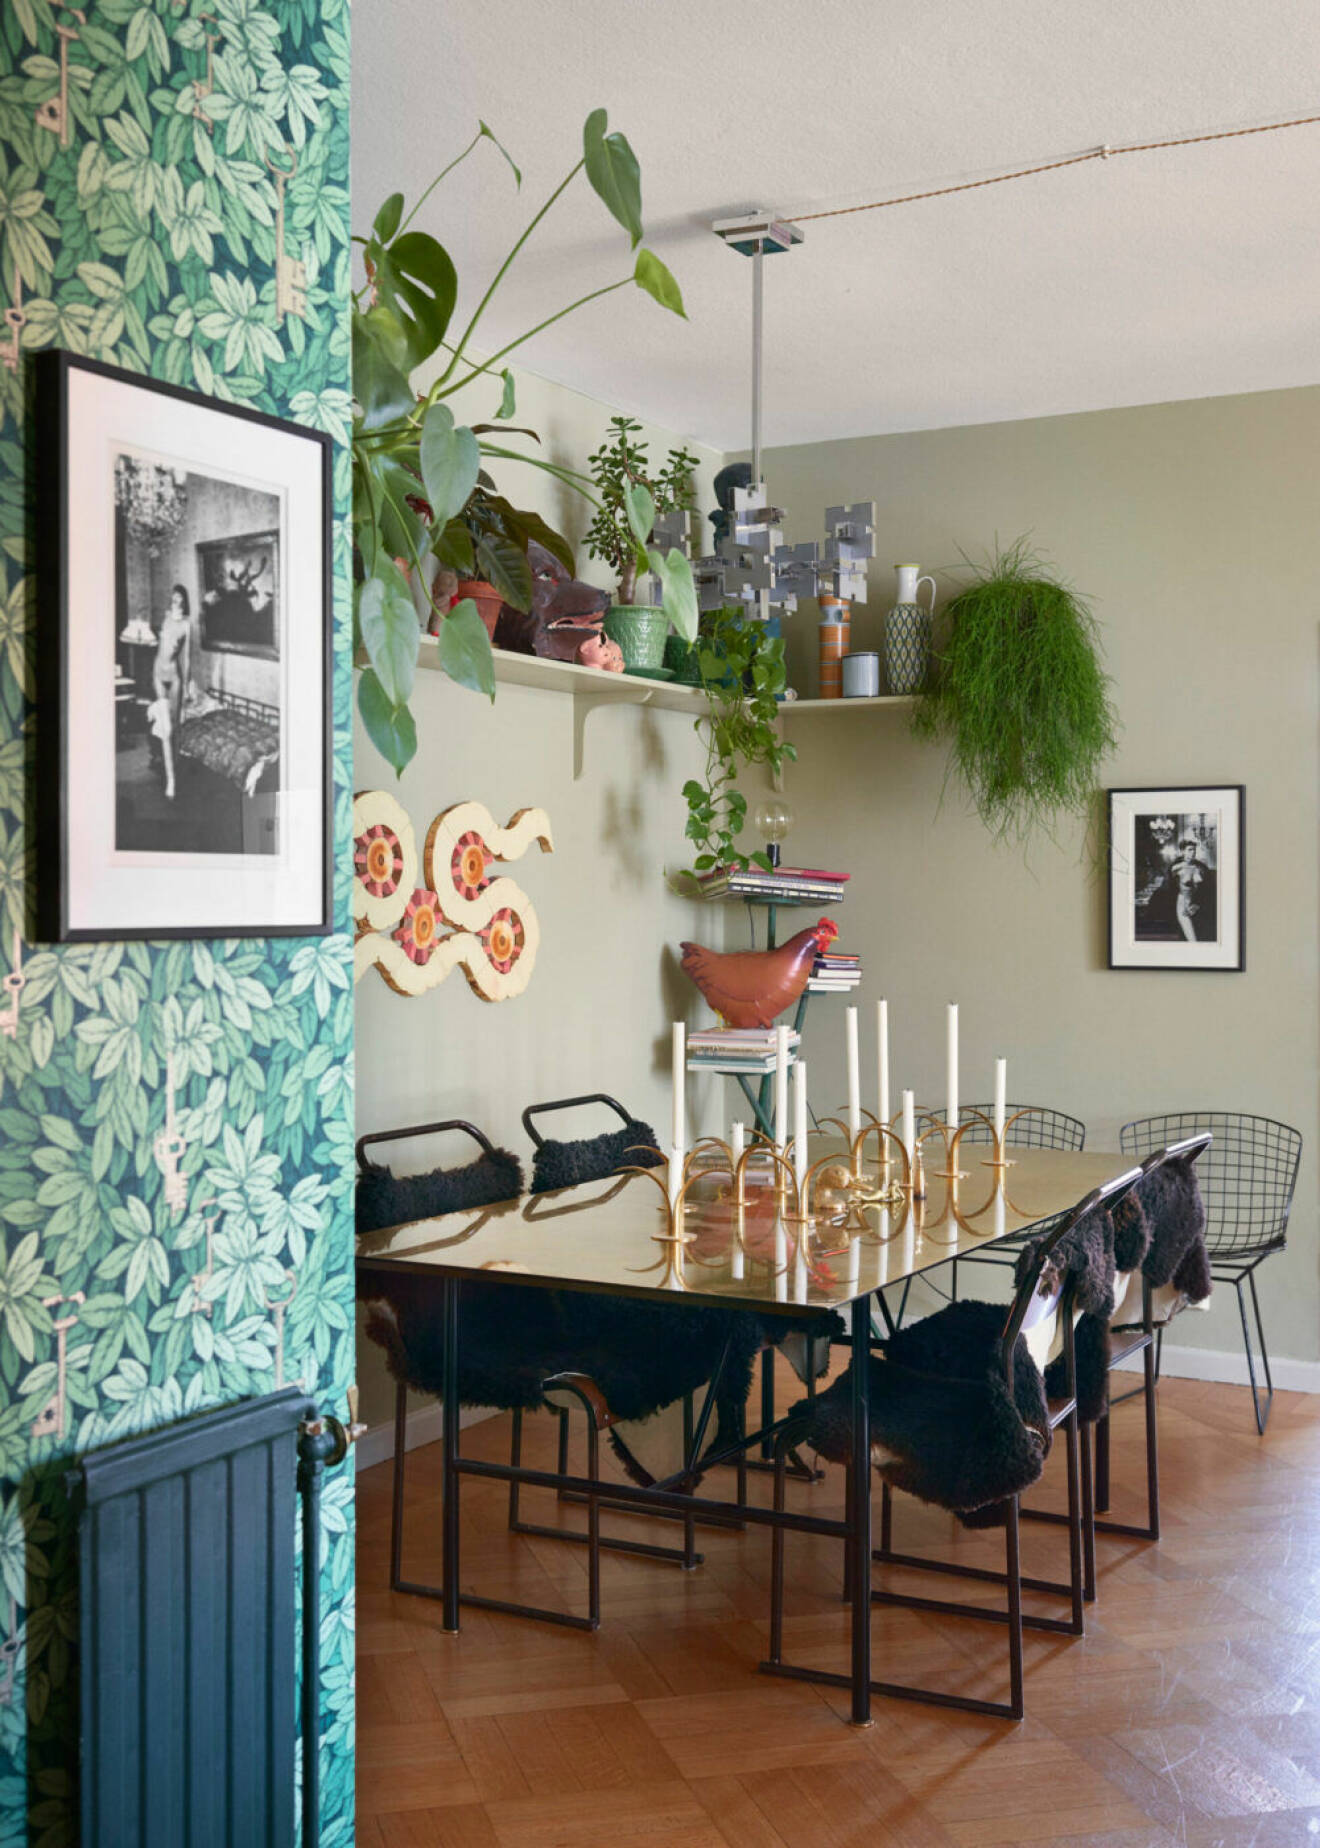 Matplats med mycket växter, mönstrad tapet och svarta möbler hos Ursula Wångander